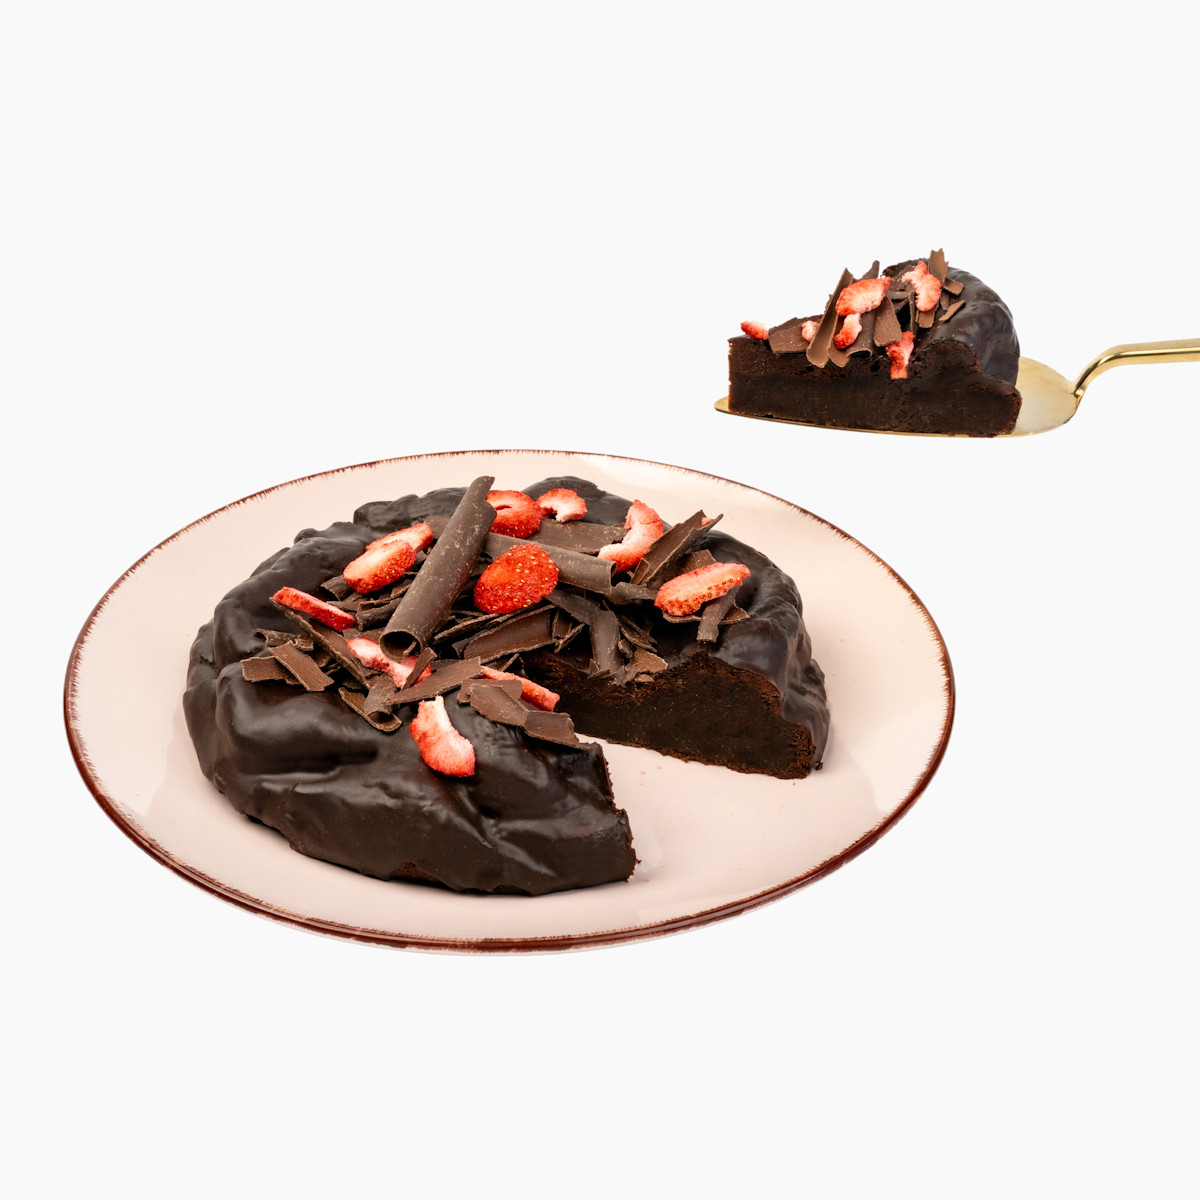 Čokodort Jahoda na talíři, boční pohled s hoblinami čokolády a kouskem dortu